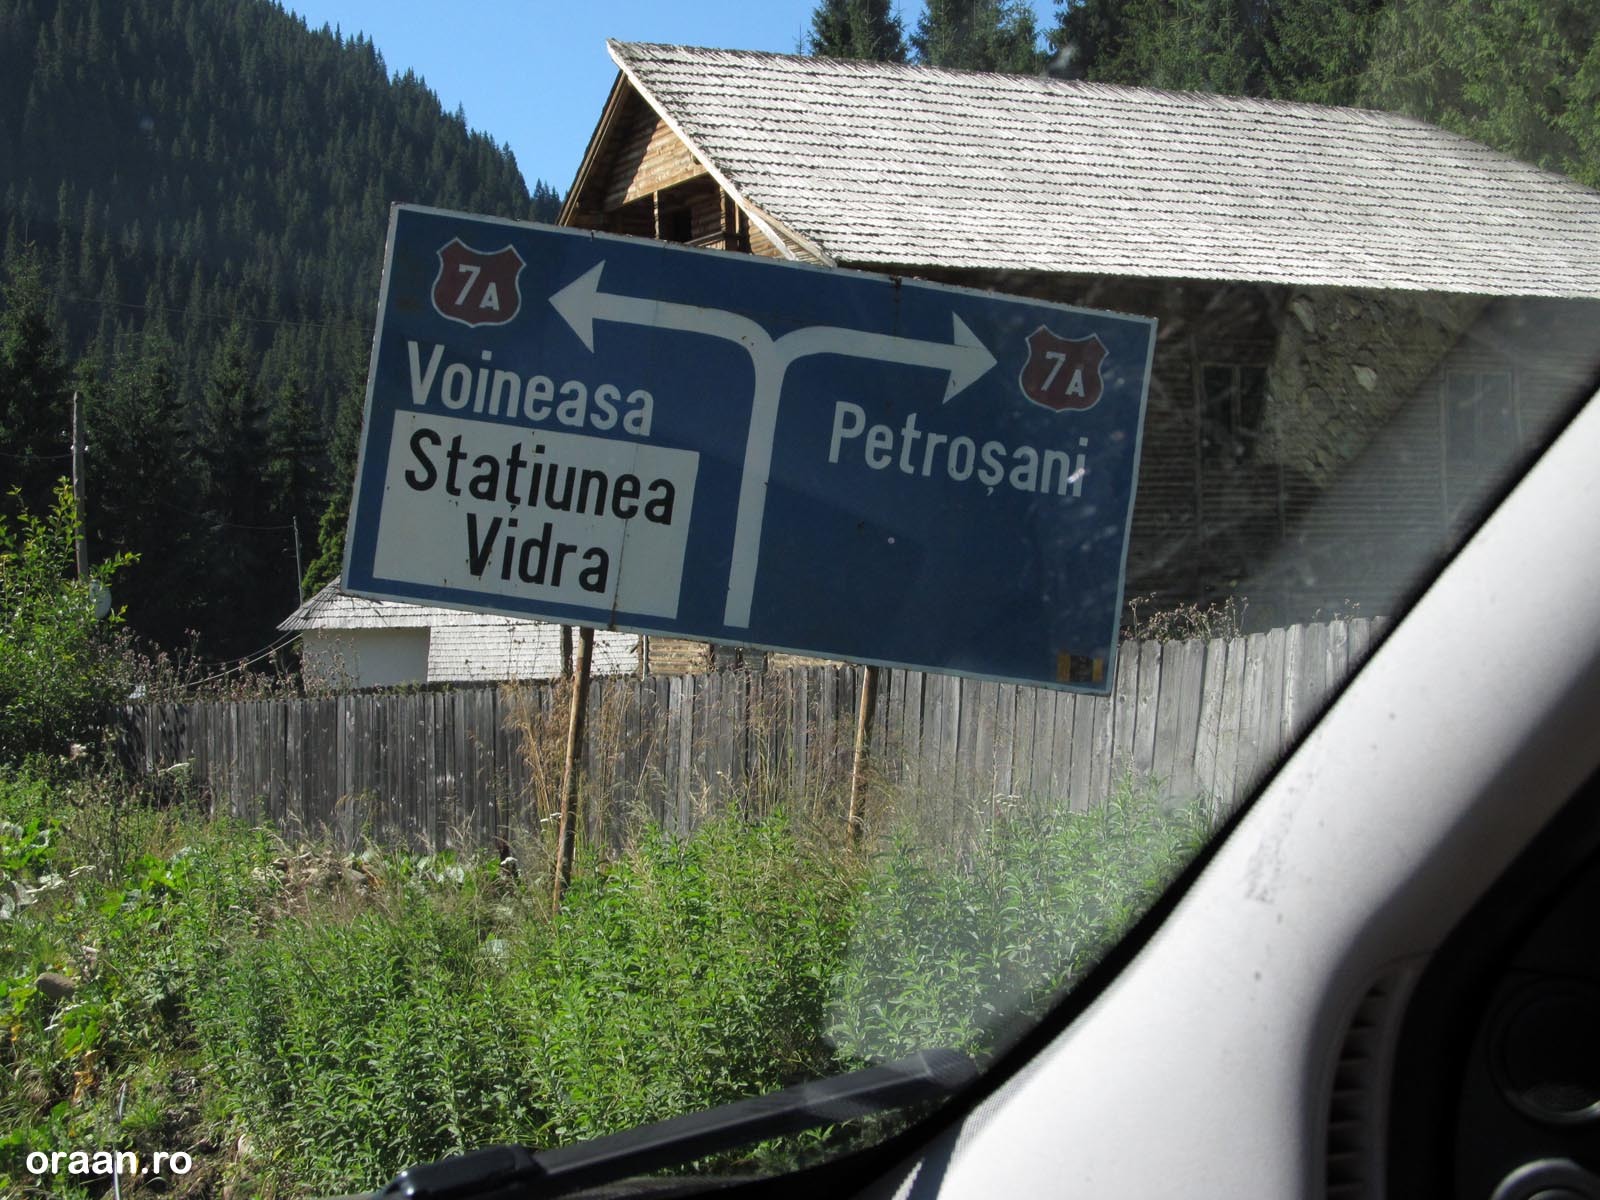 In intersectia de la Obarsia Lotrului trebuie luat spre dreapta, spre Petrosani, iar apoi la stanga spre a doua portiune a Transalpinei